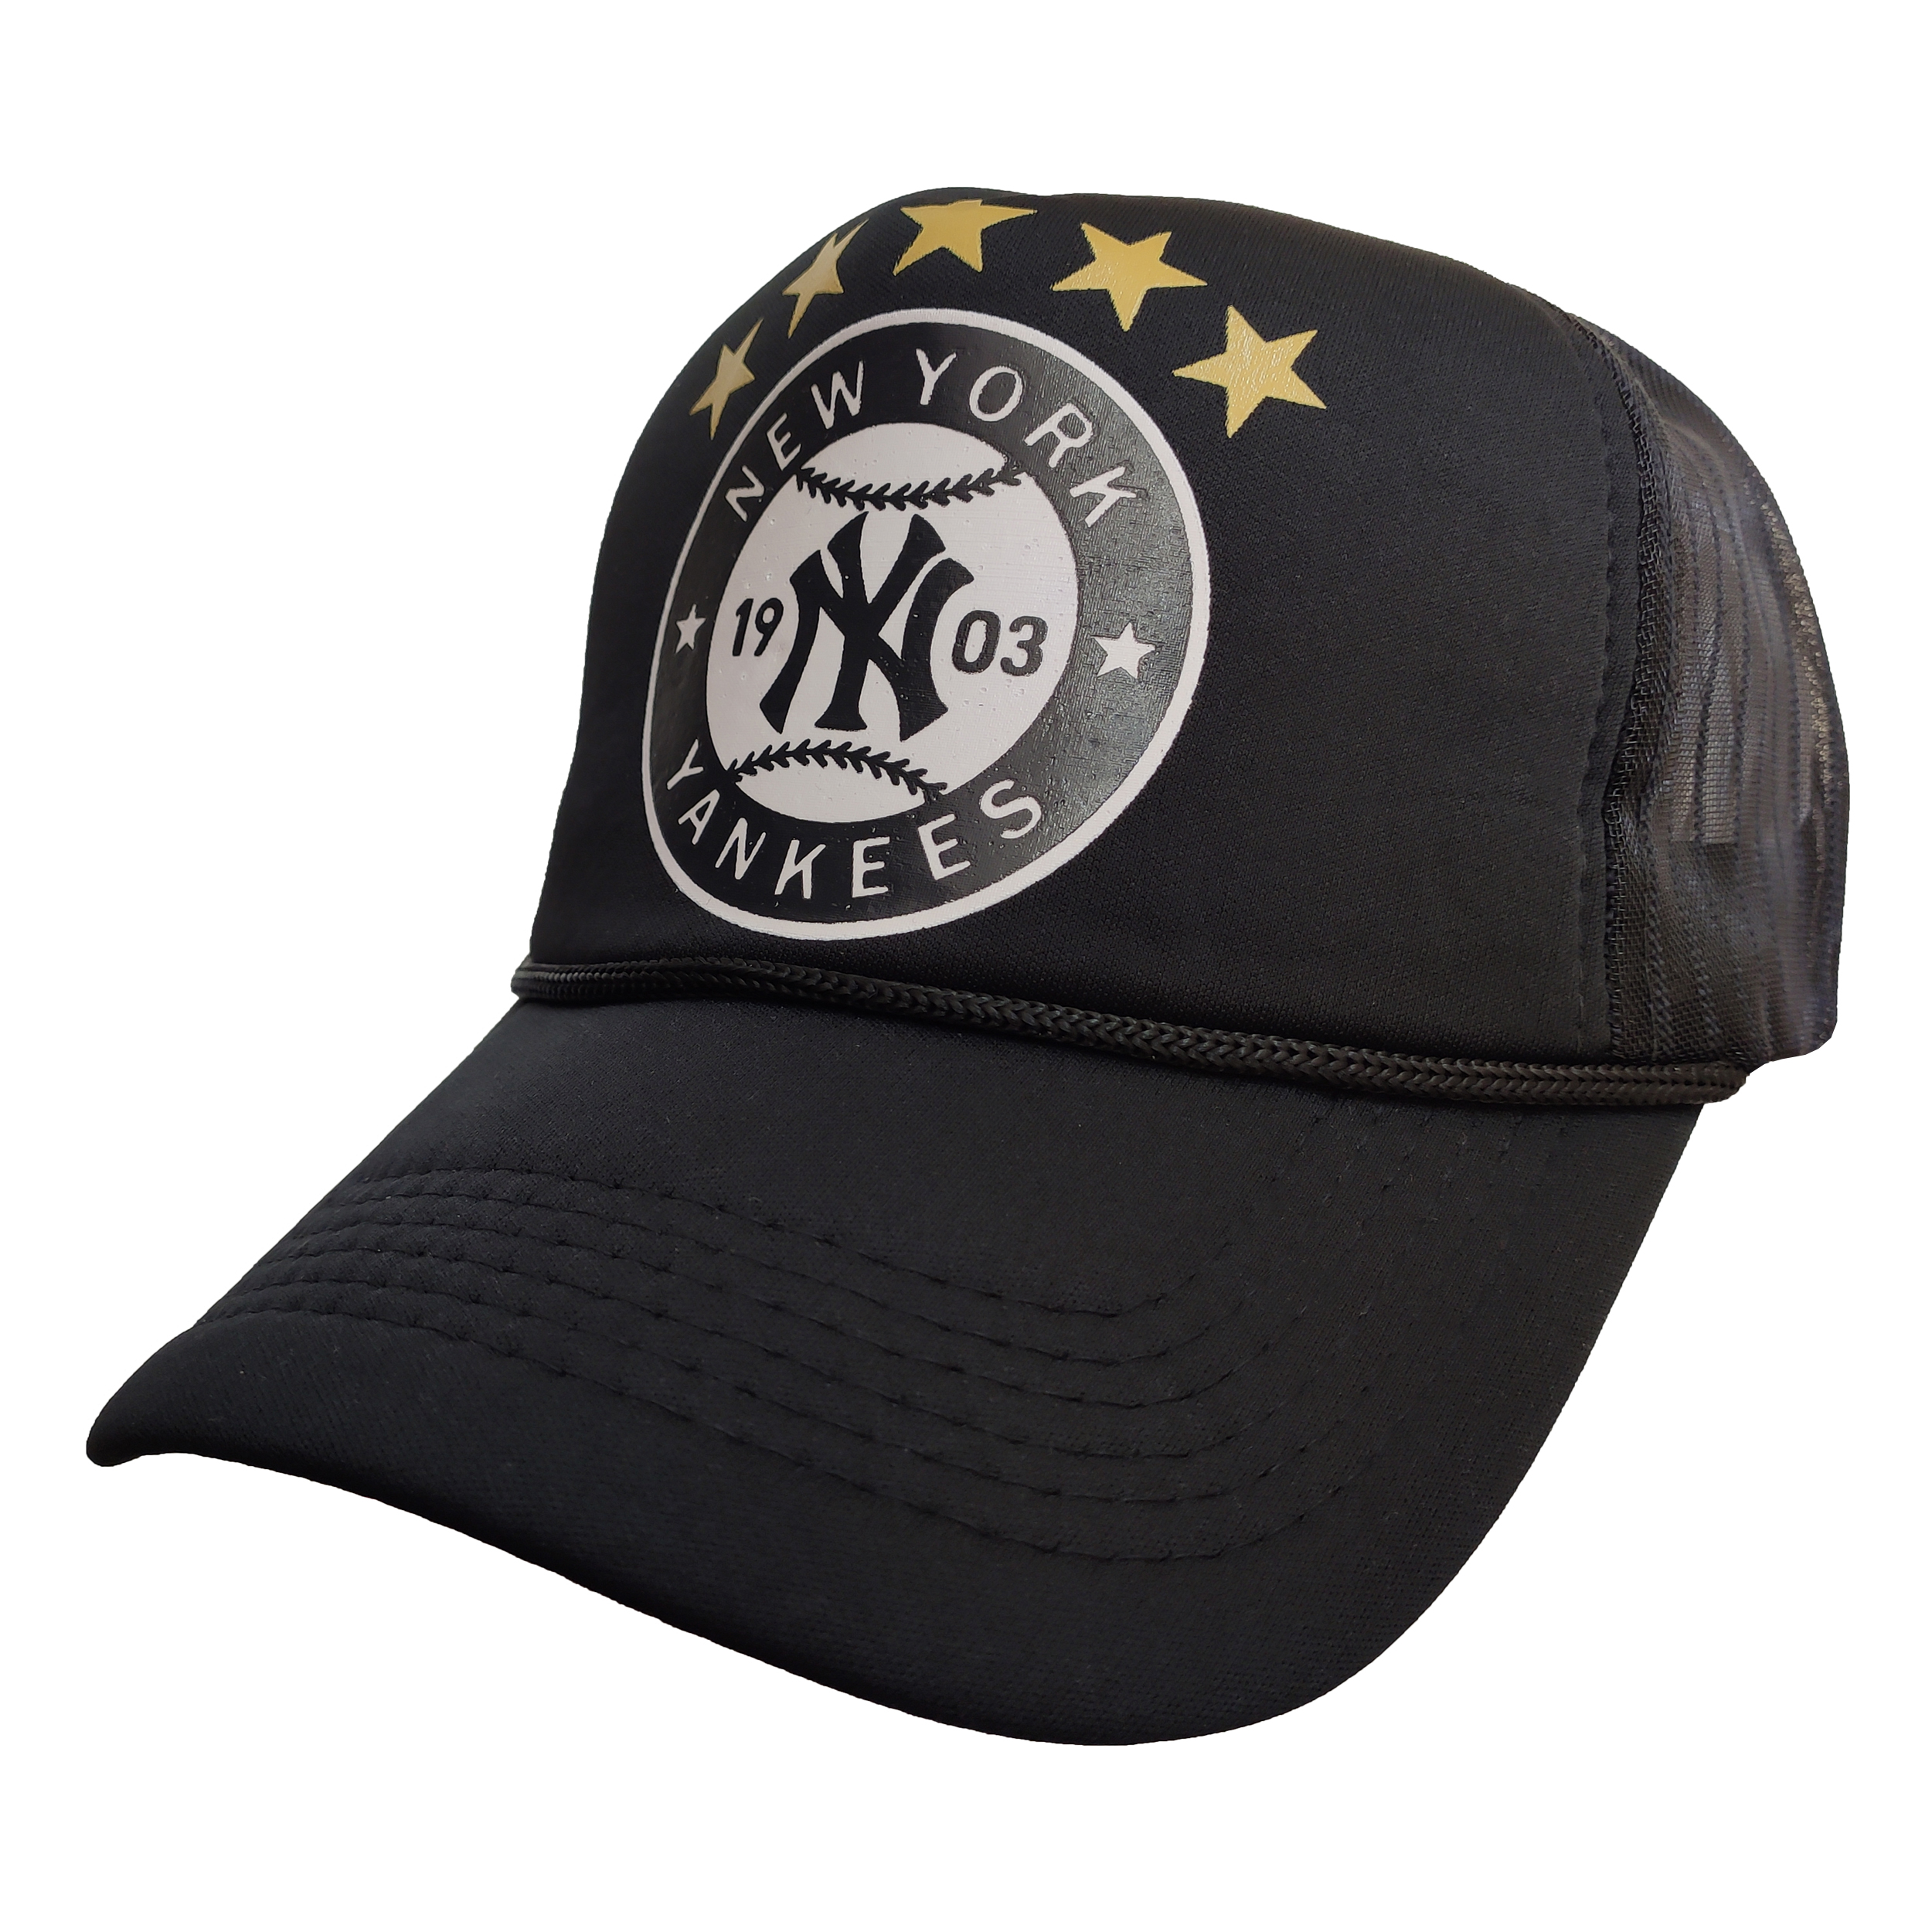  کلاه کپ طرح NY-5 STAR کد PT-30315 